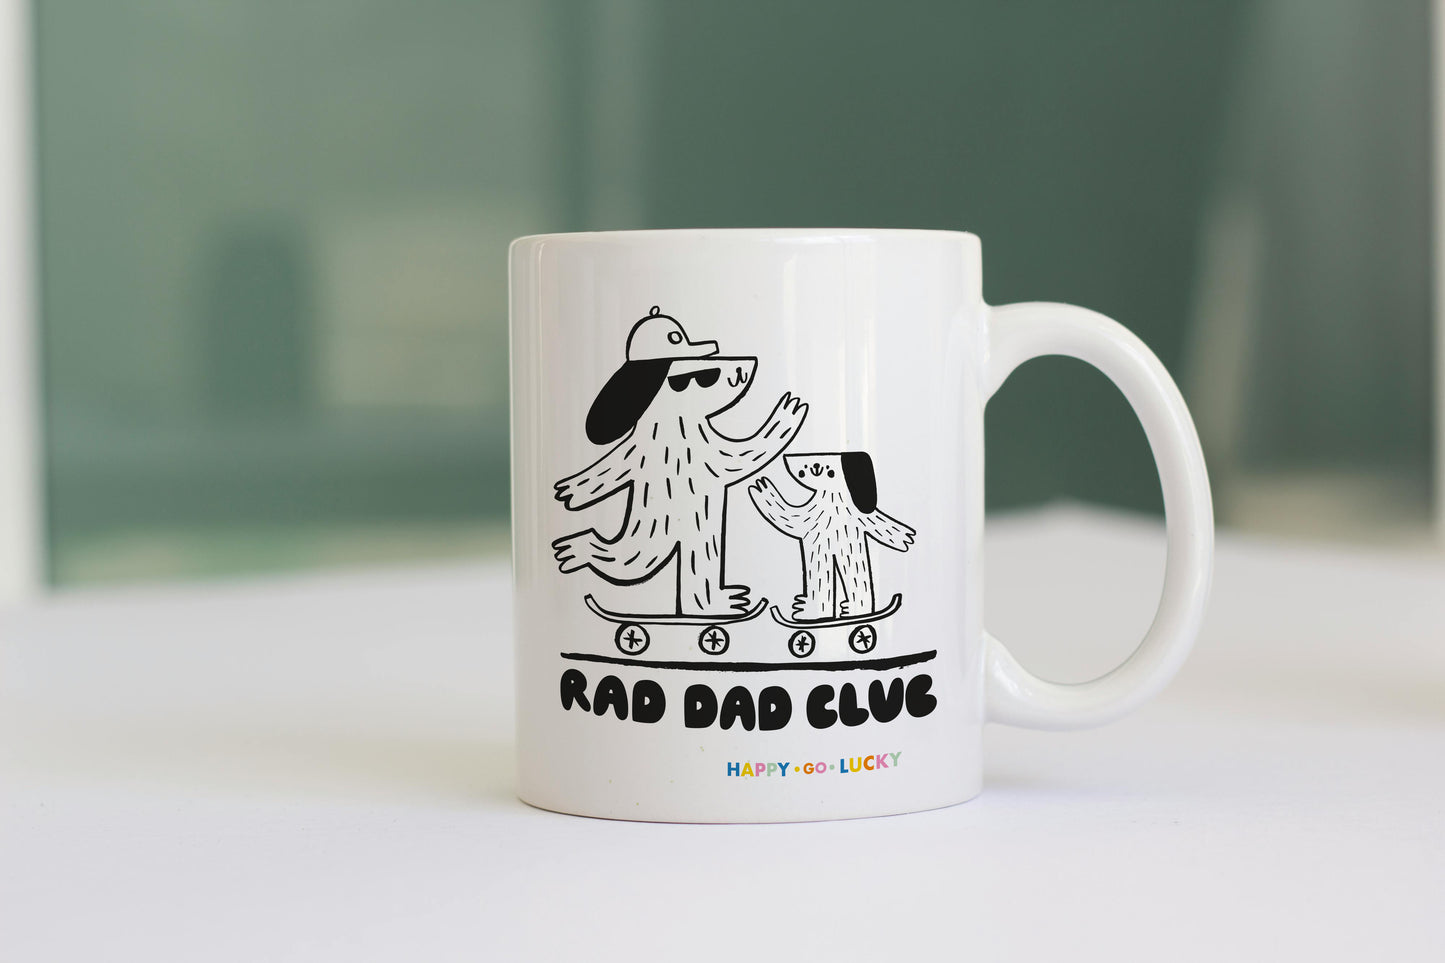 Rad Dad Club! Father's Day Mug